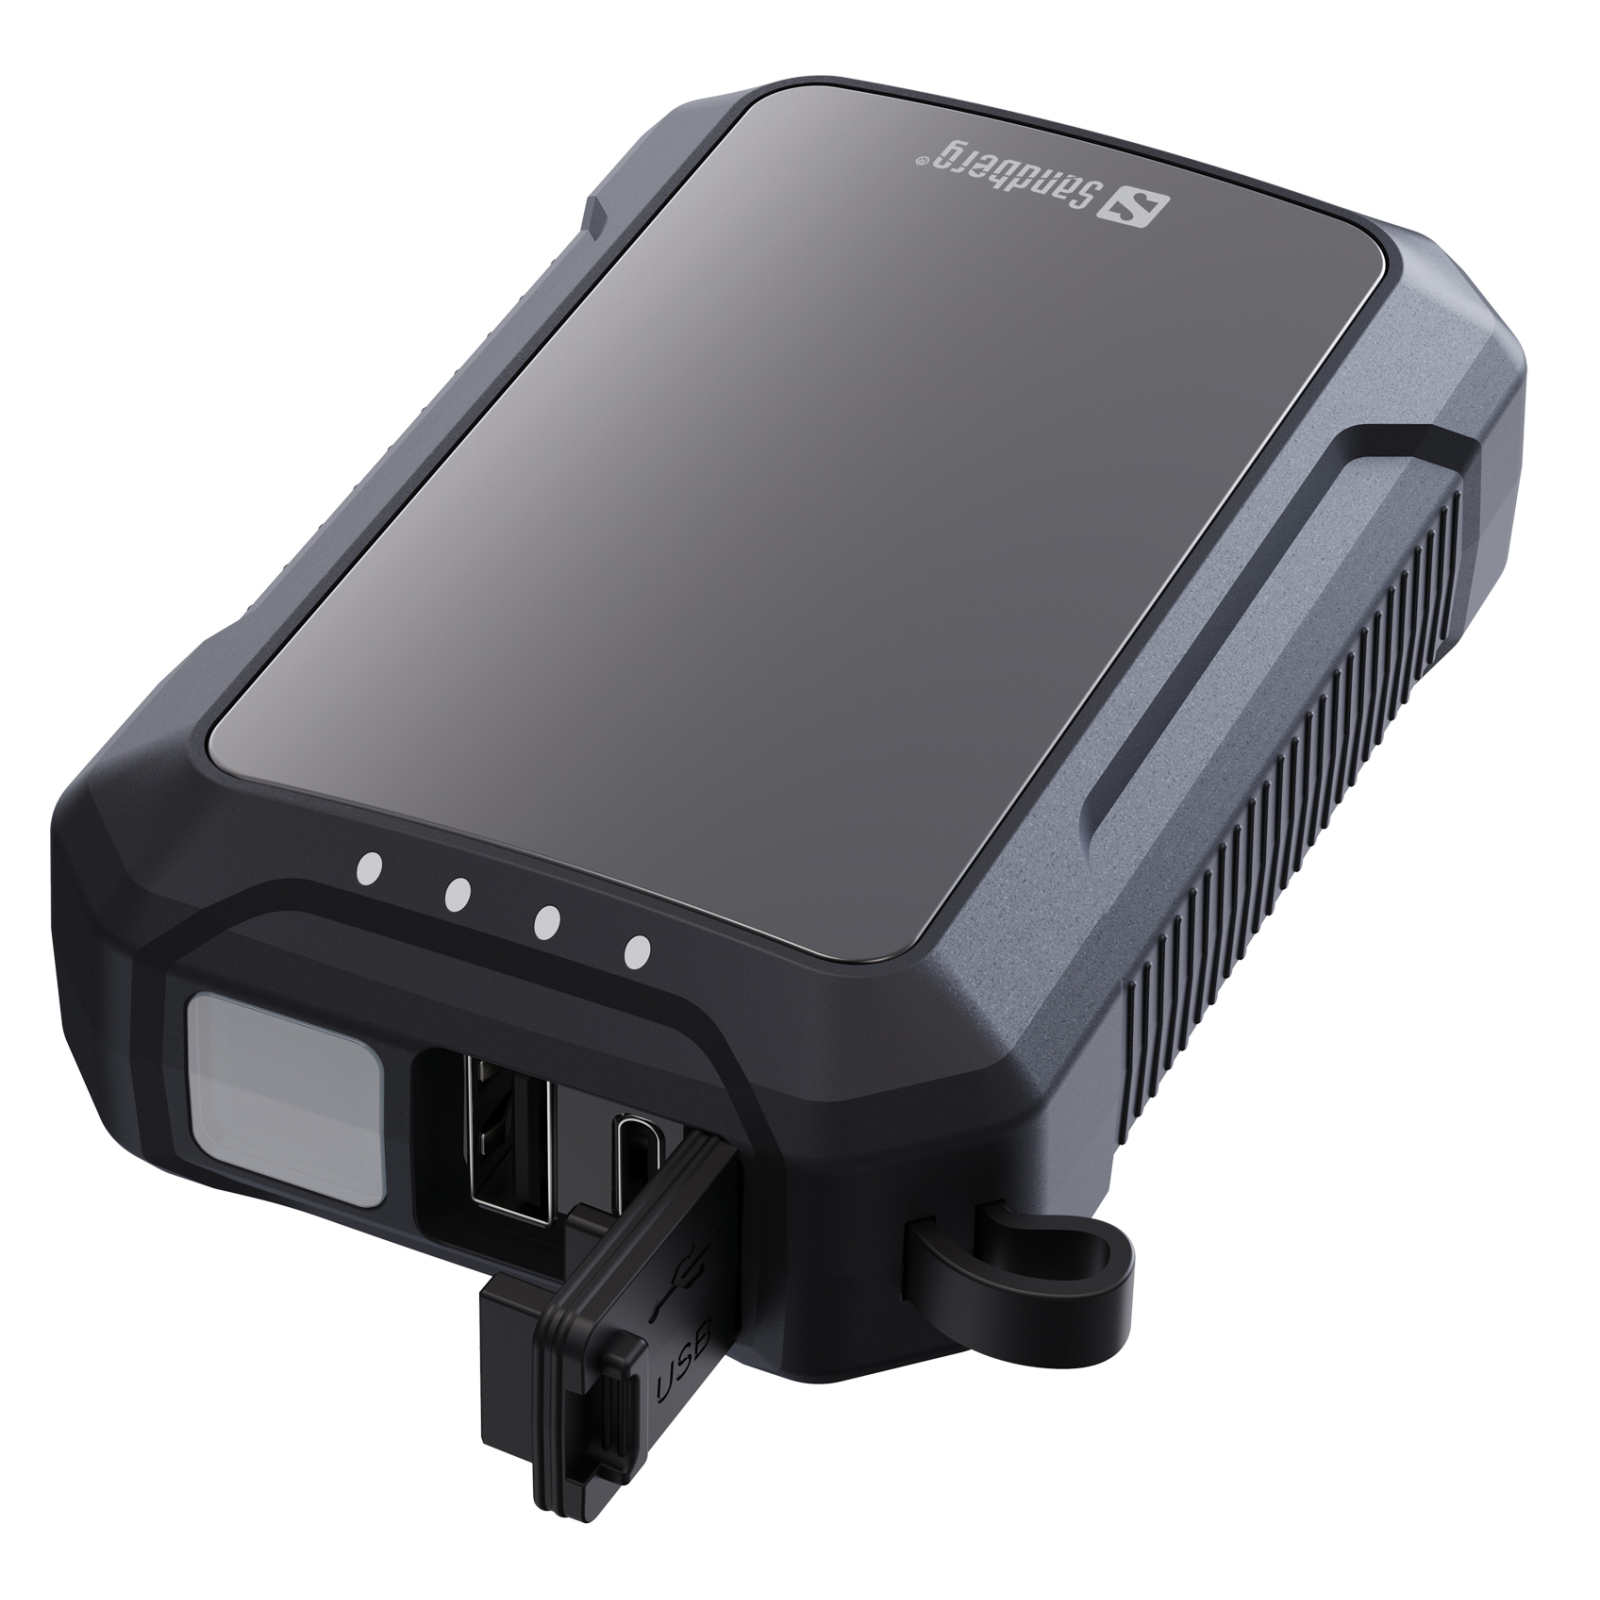 Батарея универсальная Sandberg 10000mAh, Hand Warmer, flashlight 1W, USB-C/USB-A 2A/5V (420-65) изображение 2